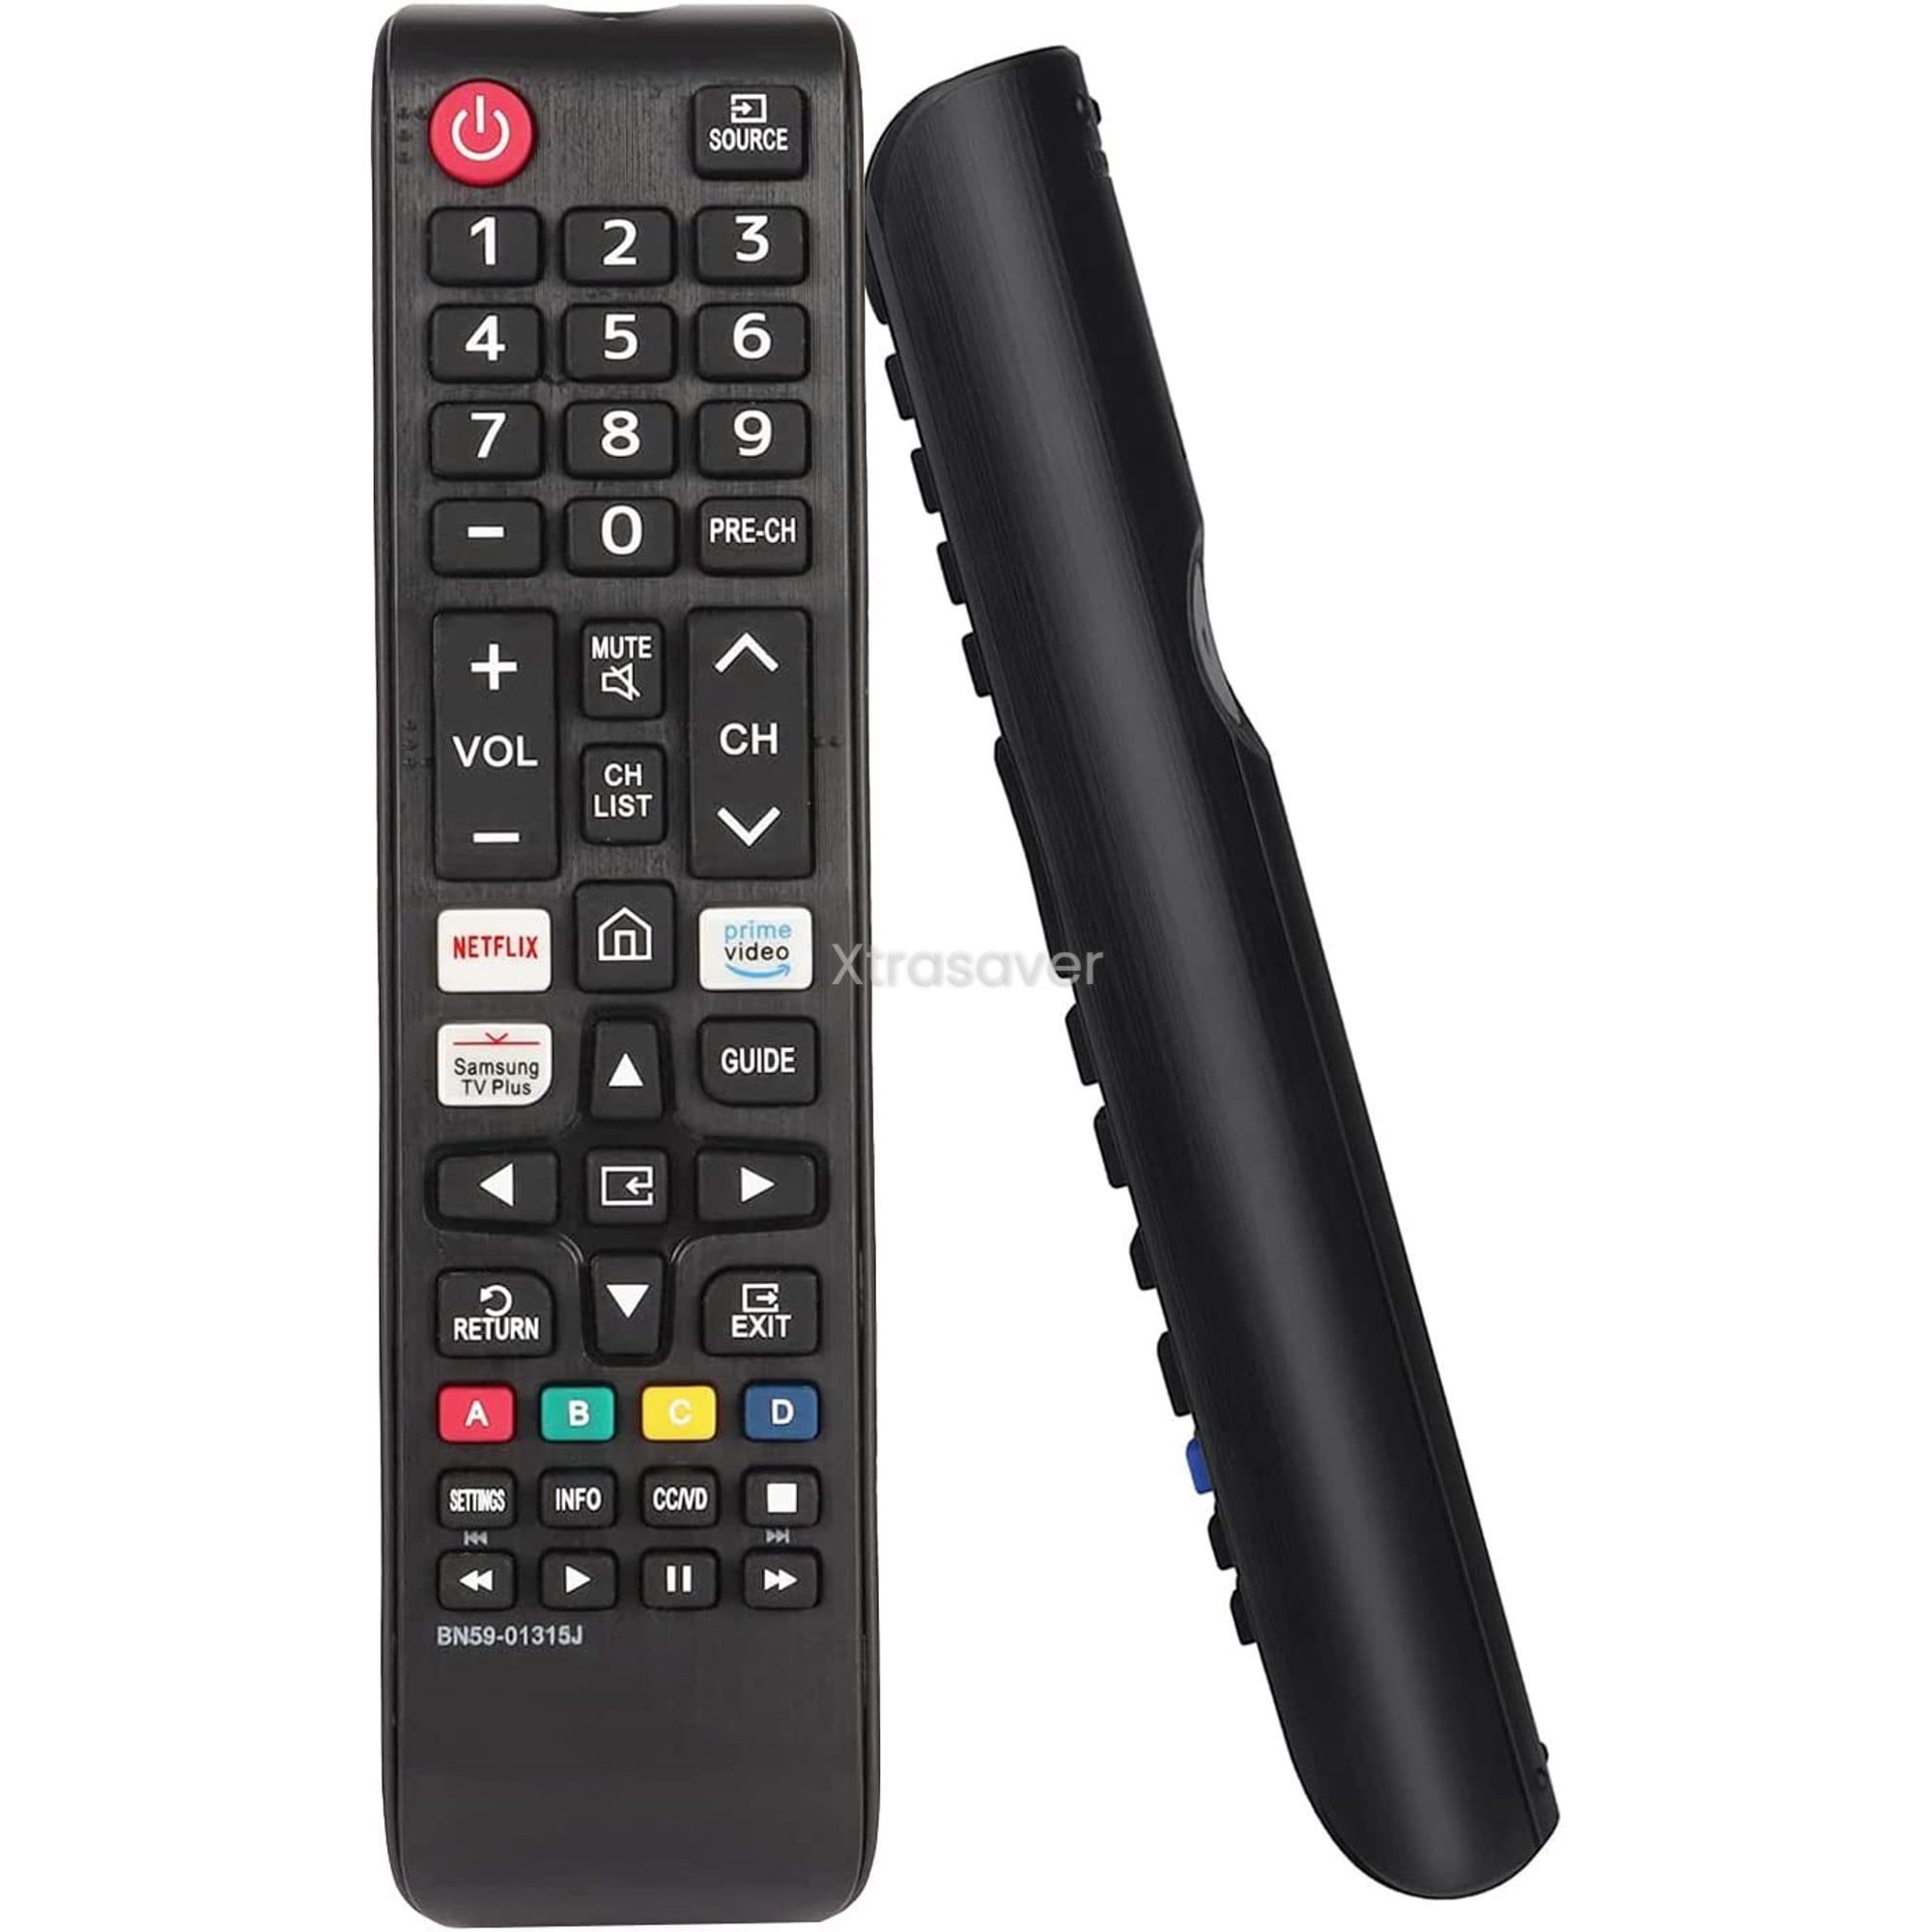 SMART remote control